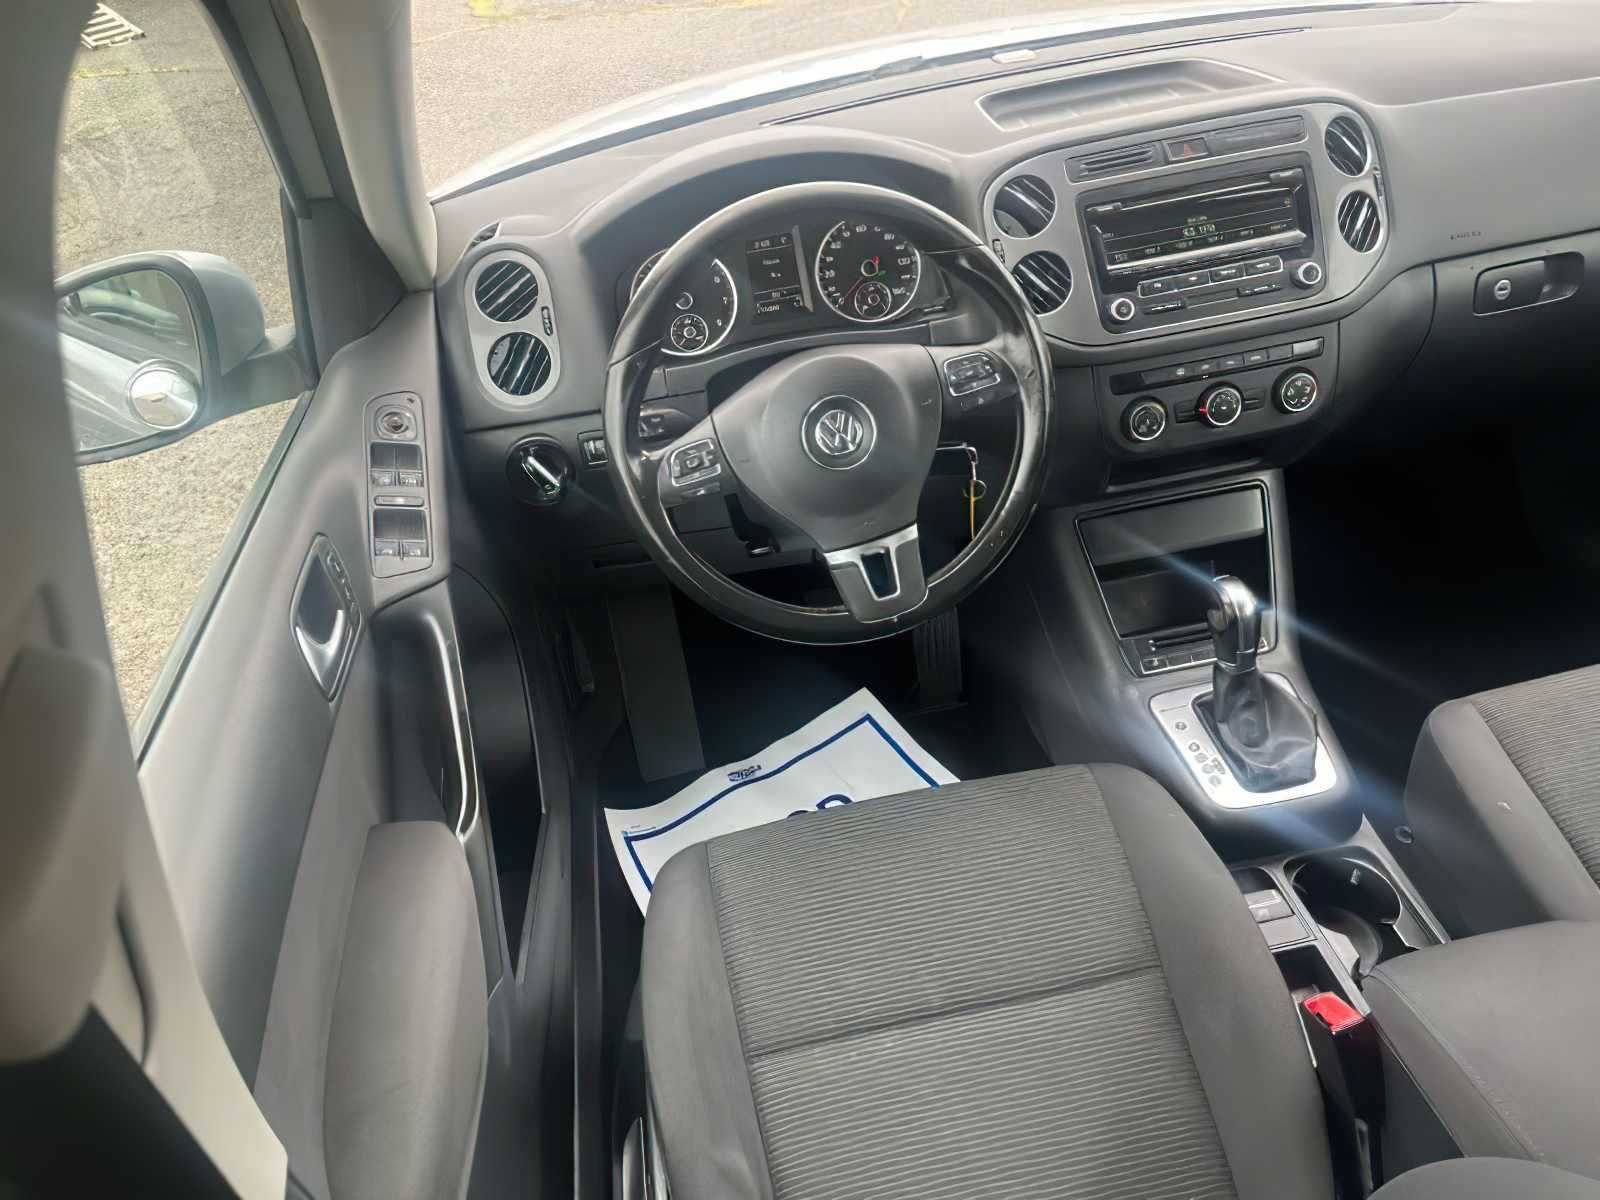 2013 Volkswagen Tiguan